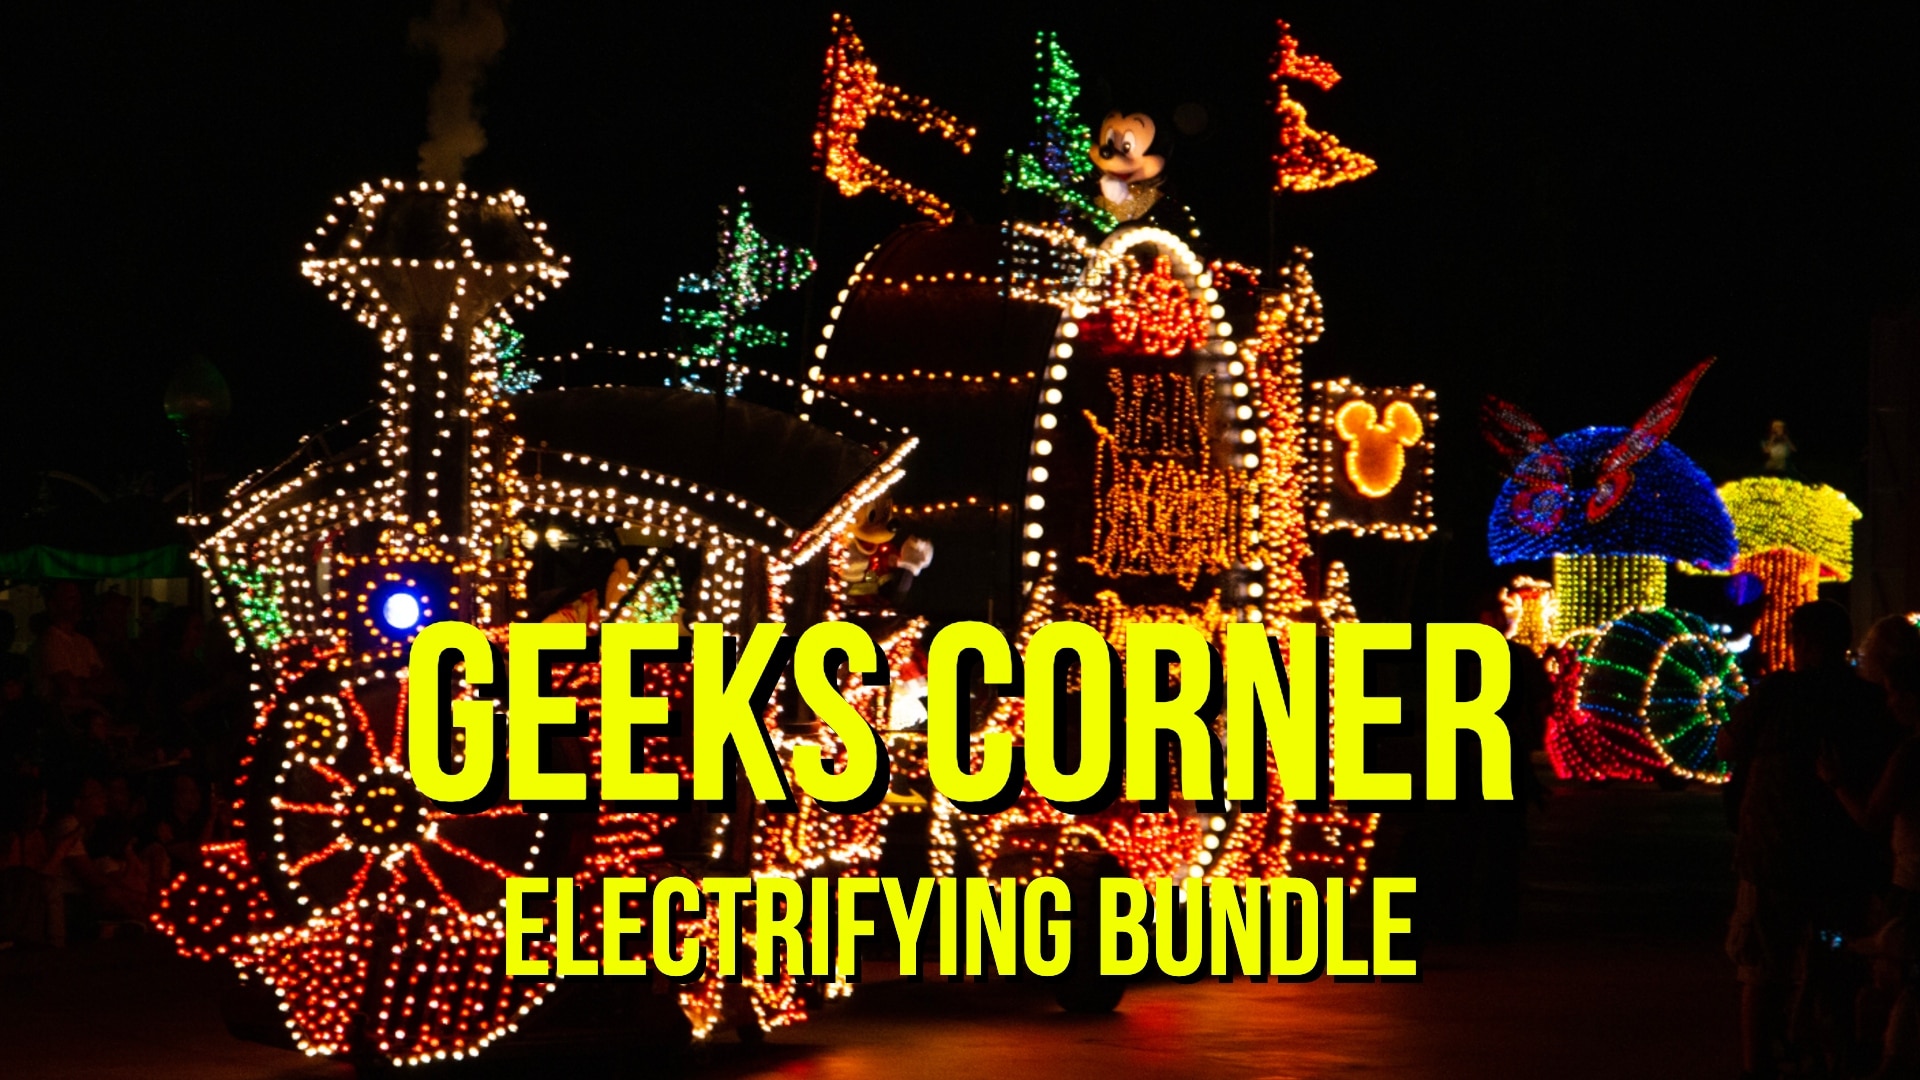 Electrifying Bundle - GEEKS CORNER